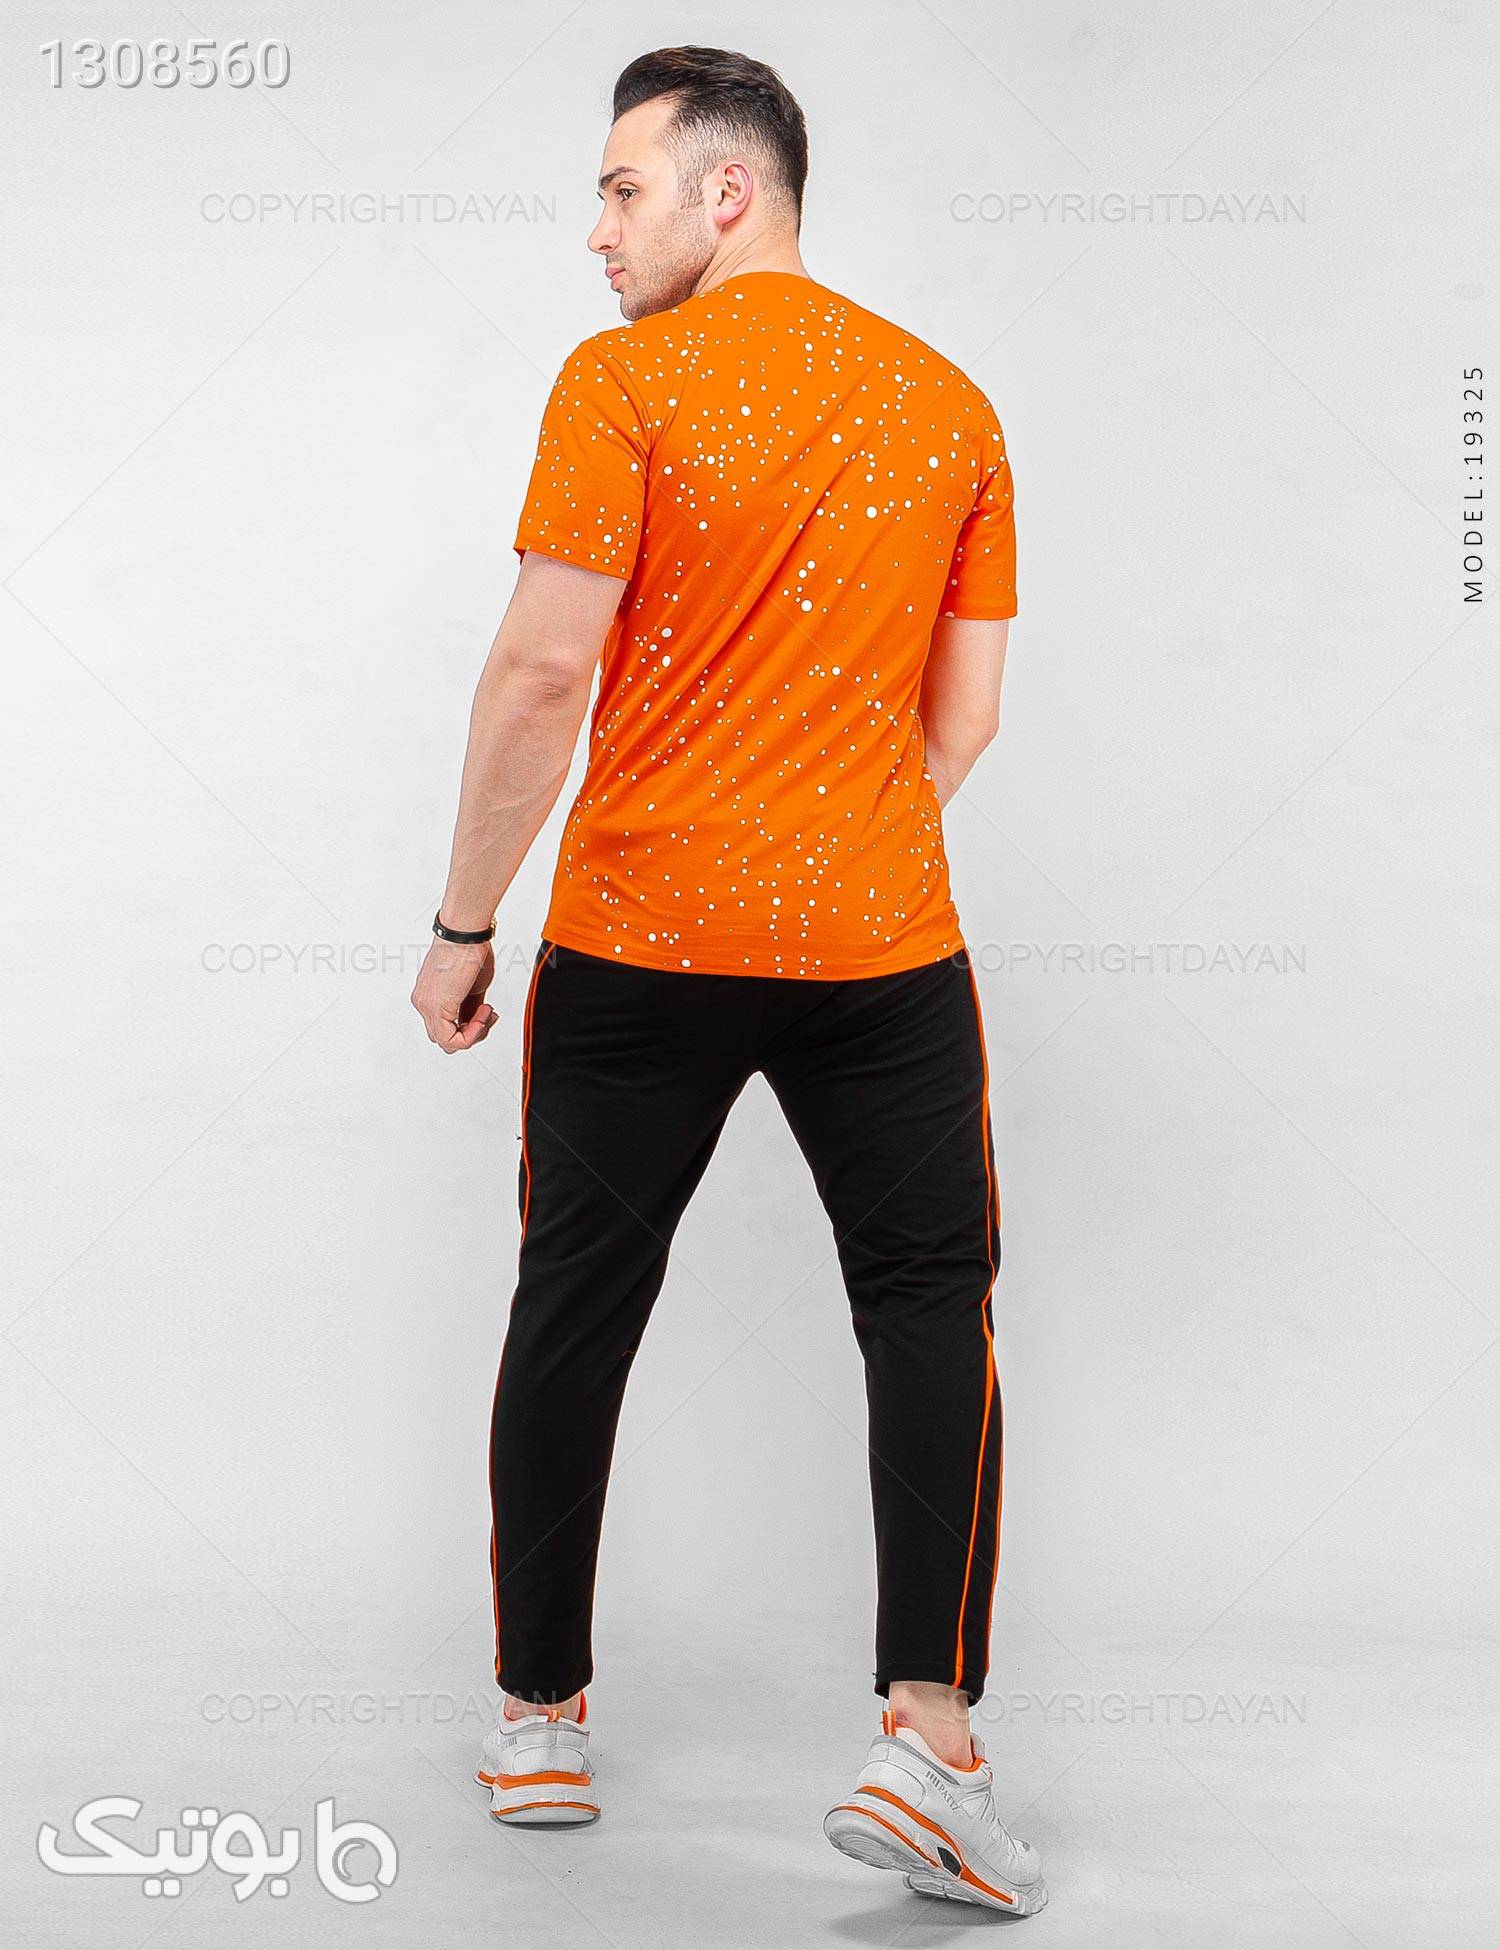 ست تیشرت و شلوار مردانه Nasa مدل 19325 نارنجی ست ورزشی مردانه